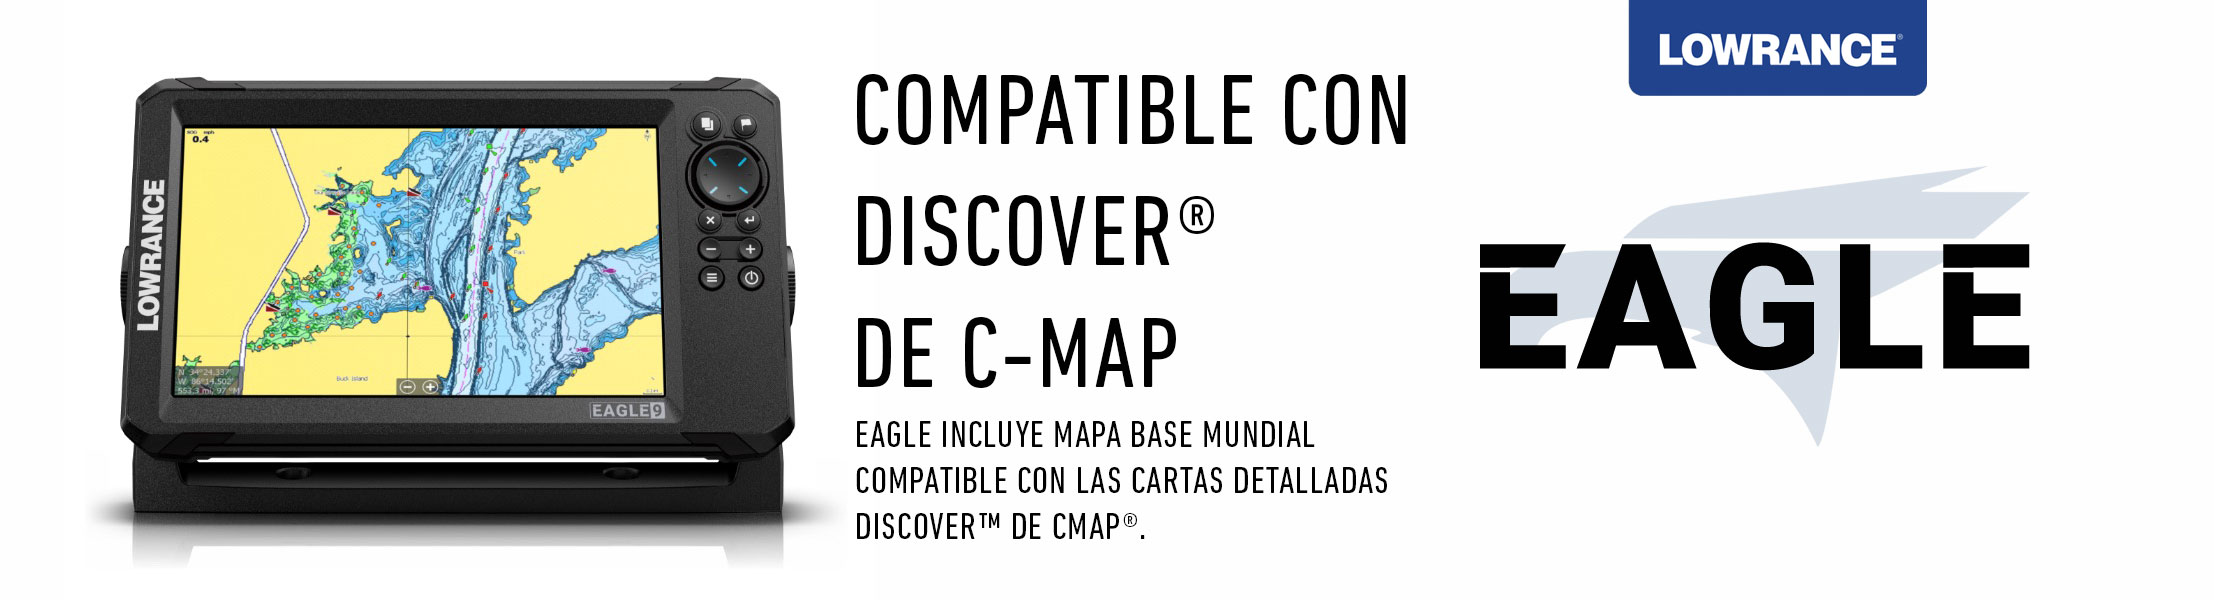 Lowrance Eagle es compatible con las cartas DISCOVER™ de CMAP®. ONNautic